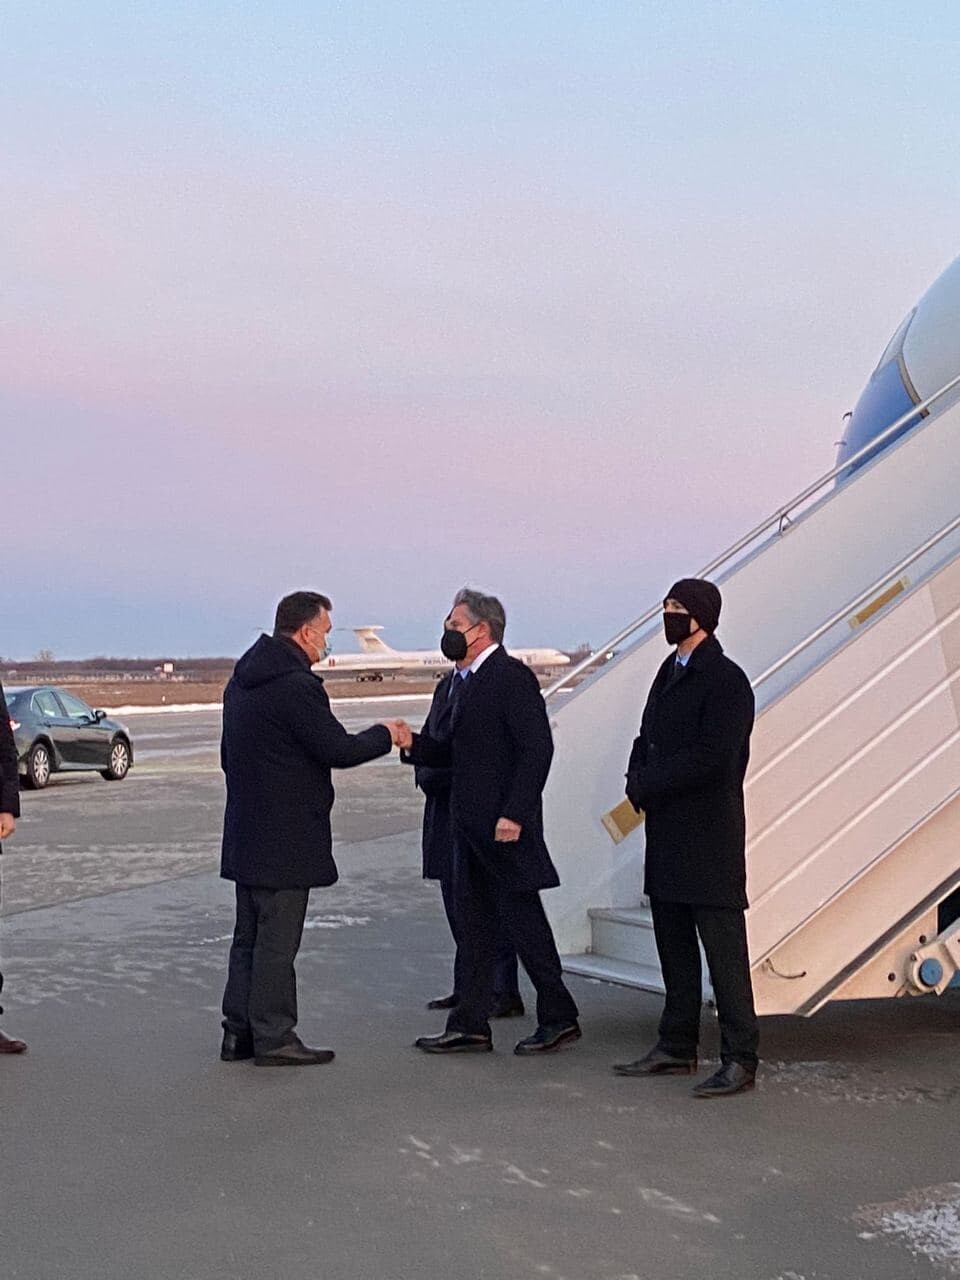 Блинкен прибыл в Киев. Об этом в своем Twitter сообщила корреспондент CNN Дженнифер Ханслер. Она опубликовала фото американского чиновника у трапа самолета.